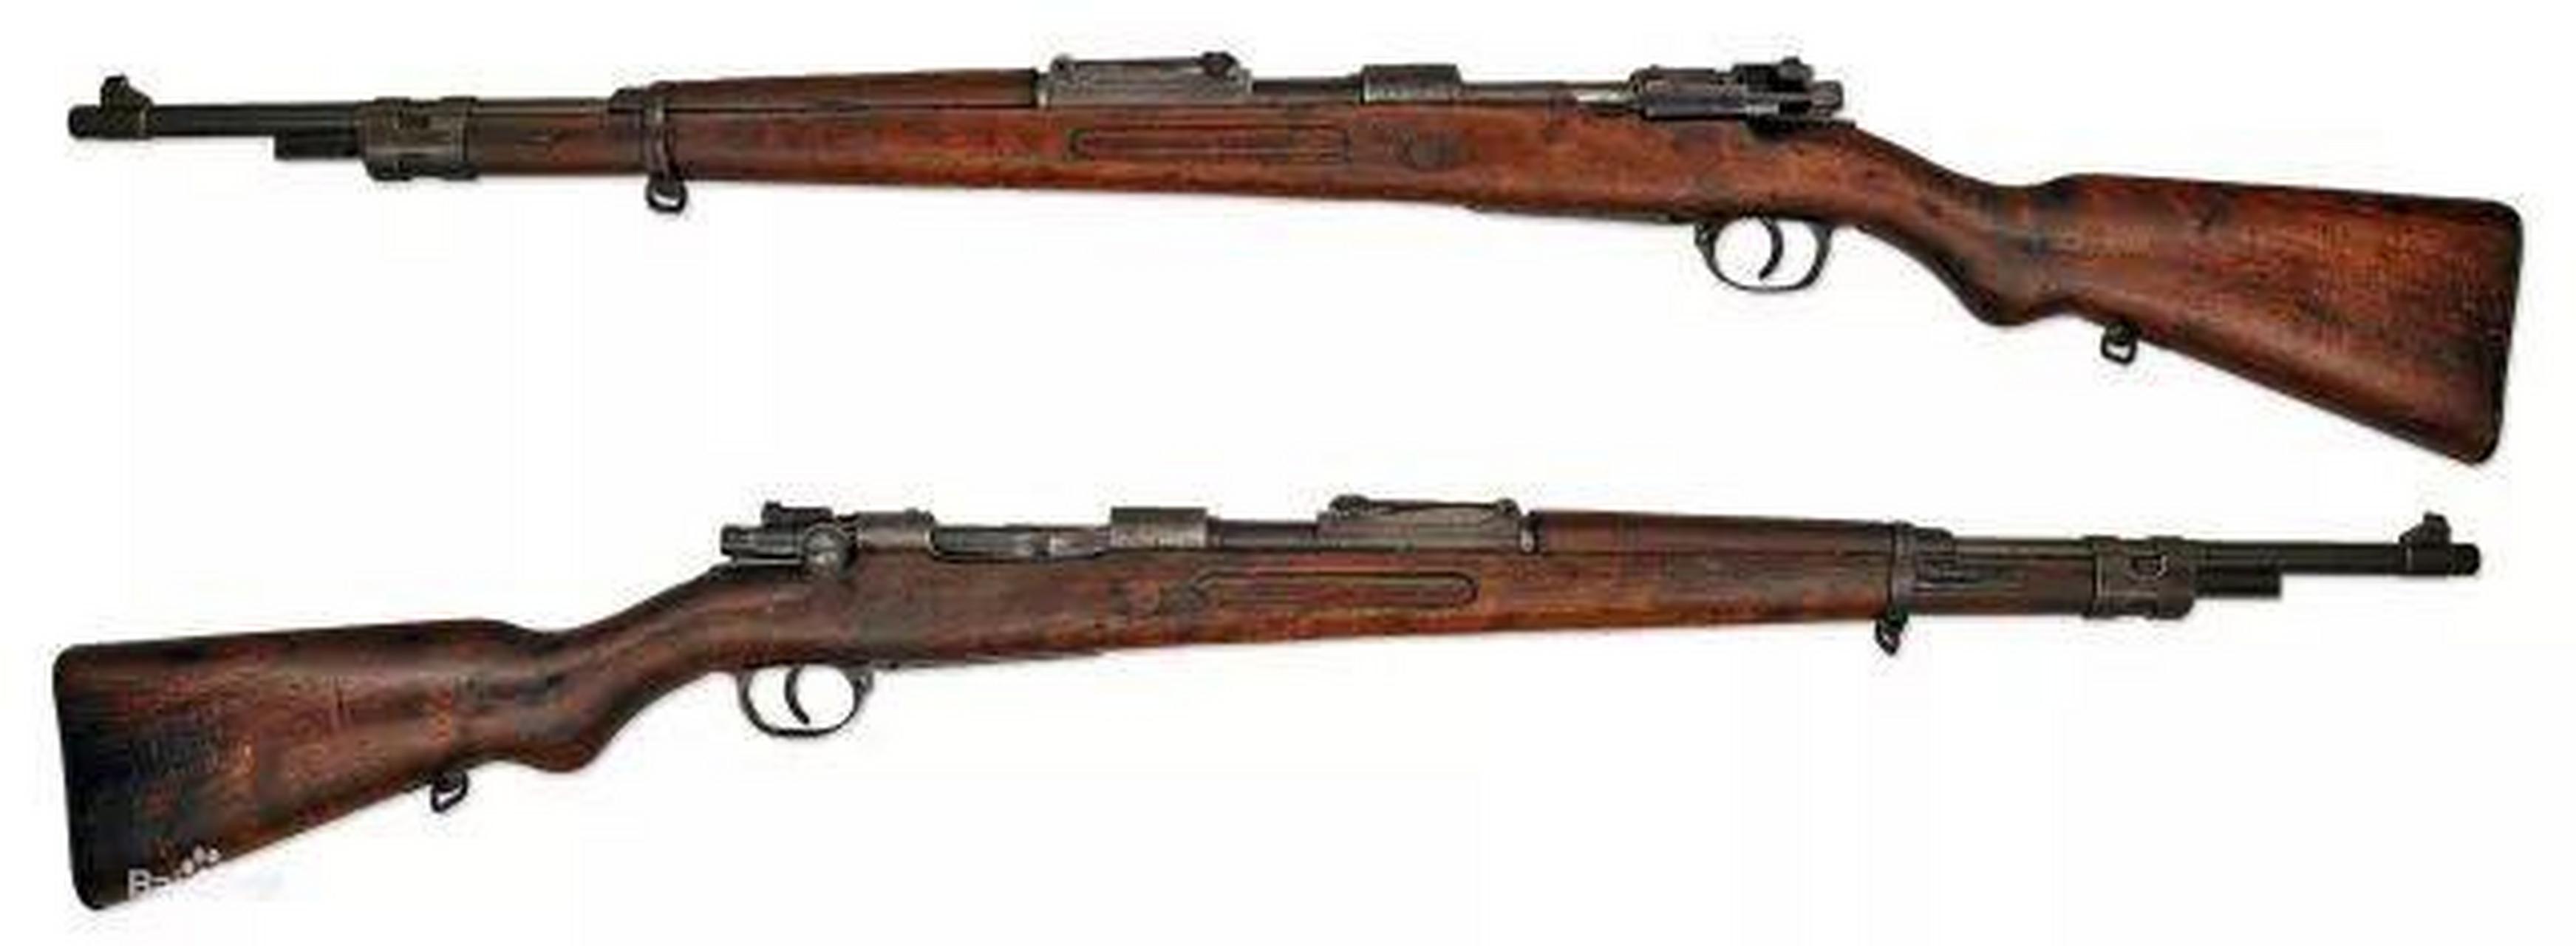 都说八路军"小米加步枪,那在抗战期间,八路军使用的步枪到底是怎样的